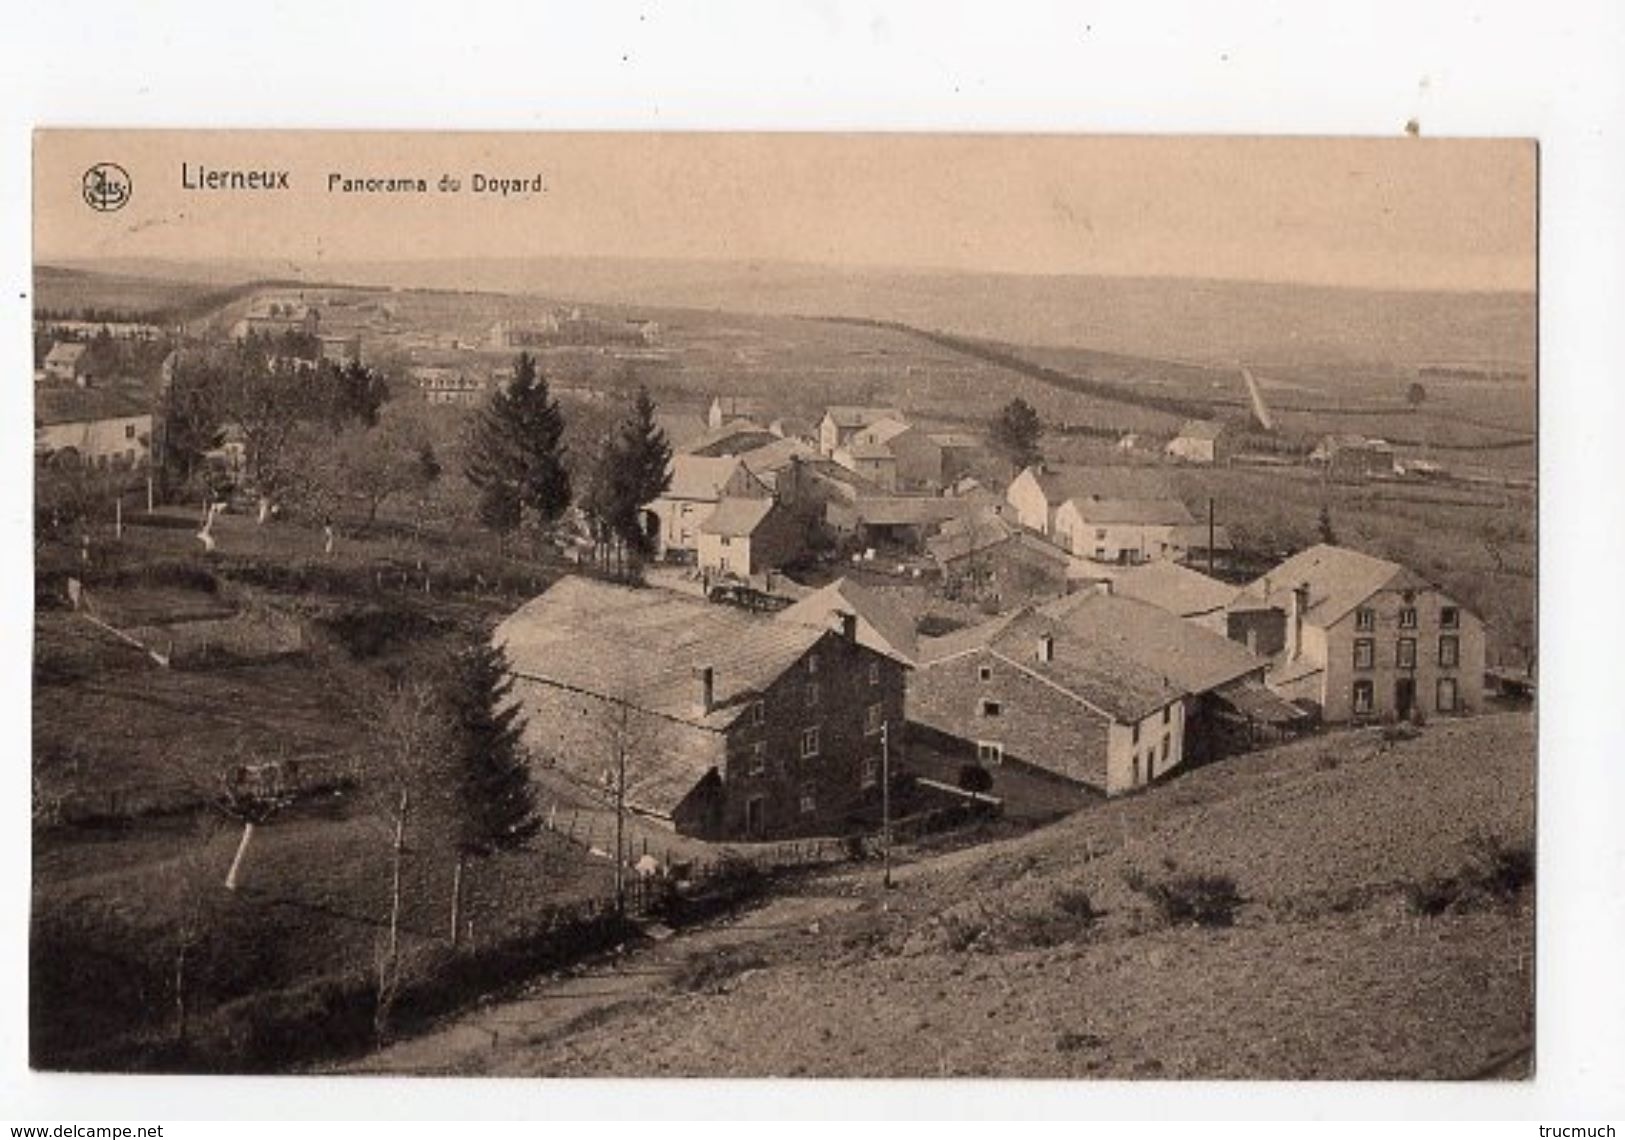 40 - LIERNEUX  - Panorama Du Doyard - Lierneux